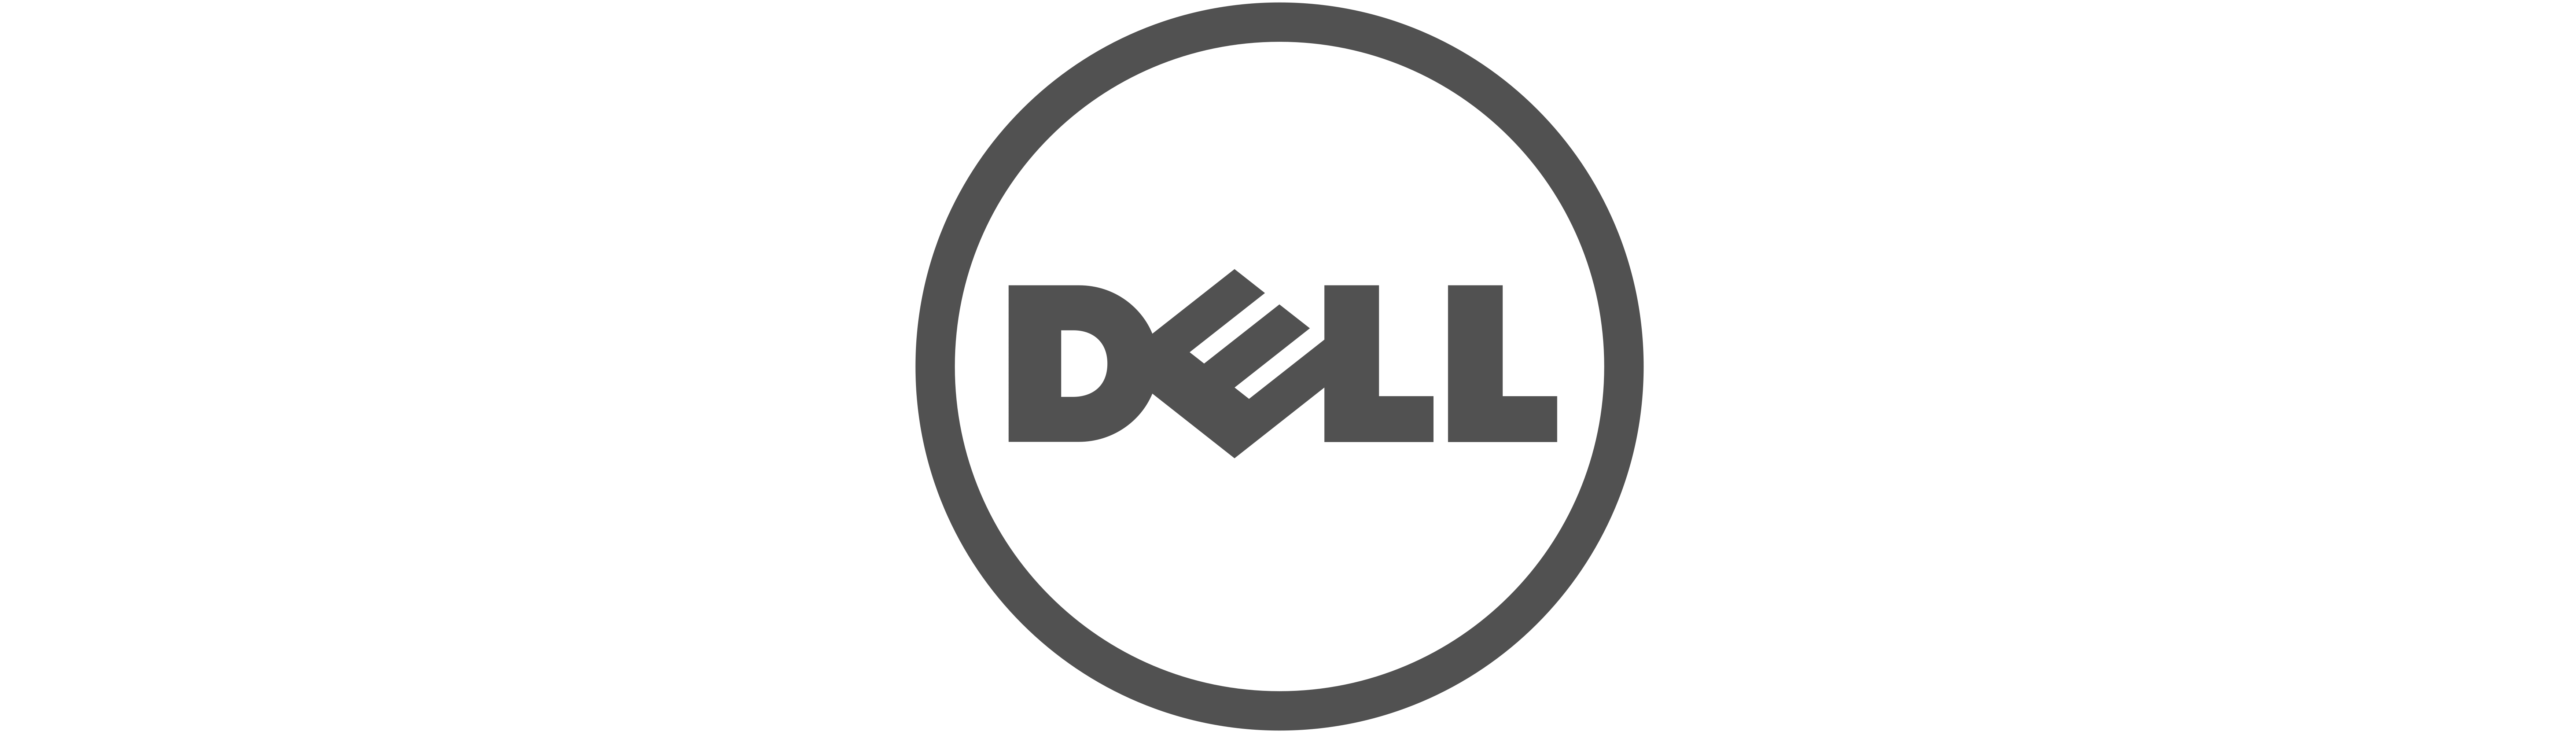 Dell-logo1